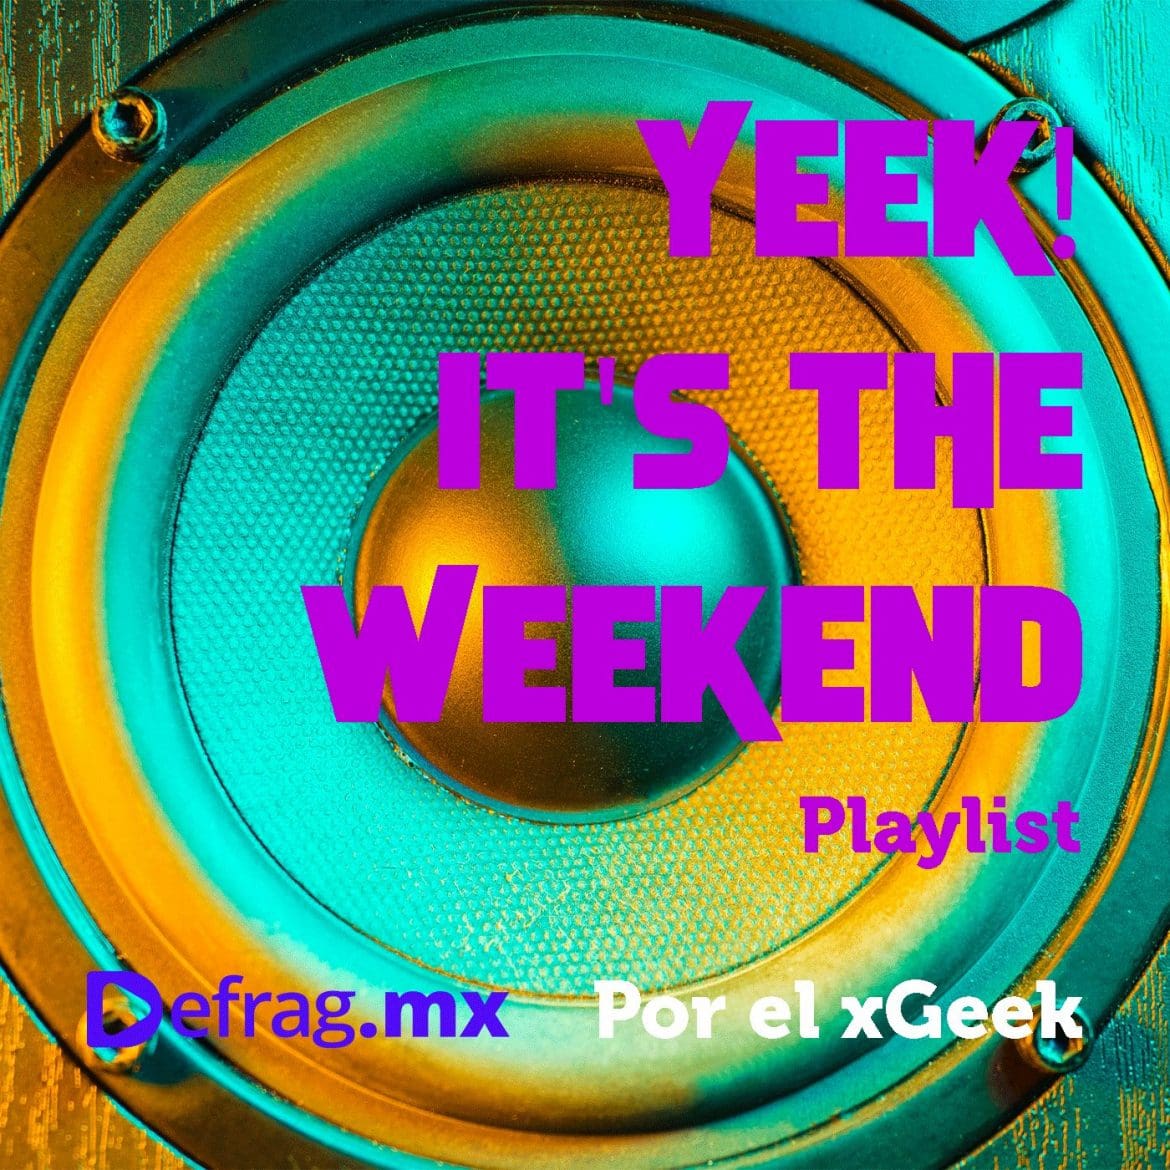 Defrag.mx Yeek! It's The Weekend Playlist Música Top HIts Sep 23 2022